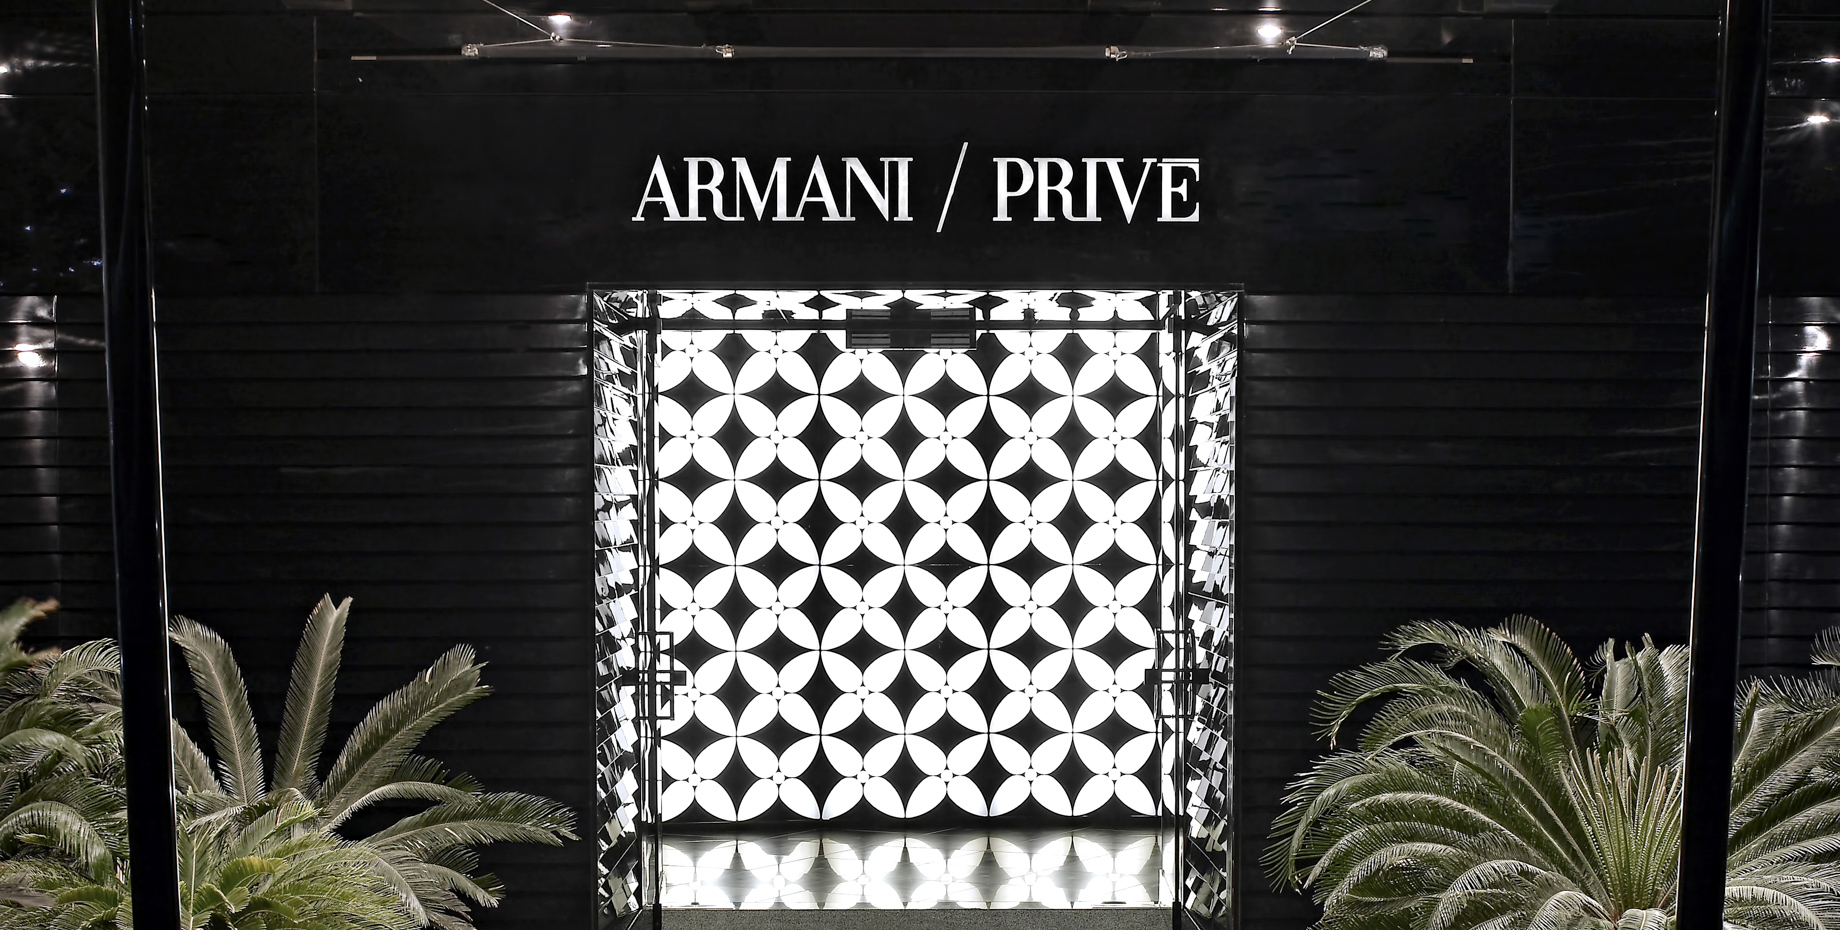 Armani Hotel Dubai – Burj Khalifa, Dubai, UAE – Armani Prive Night Club Entrance